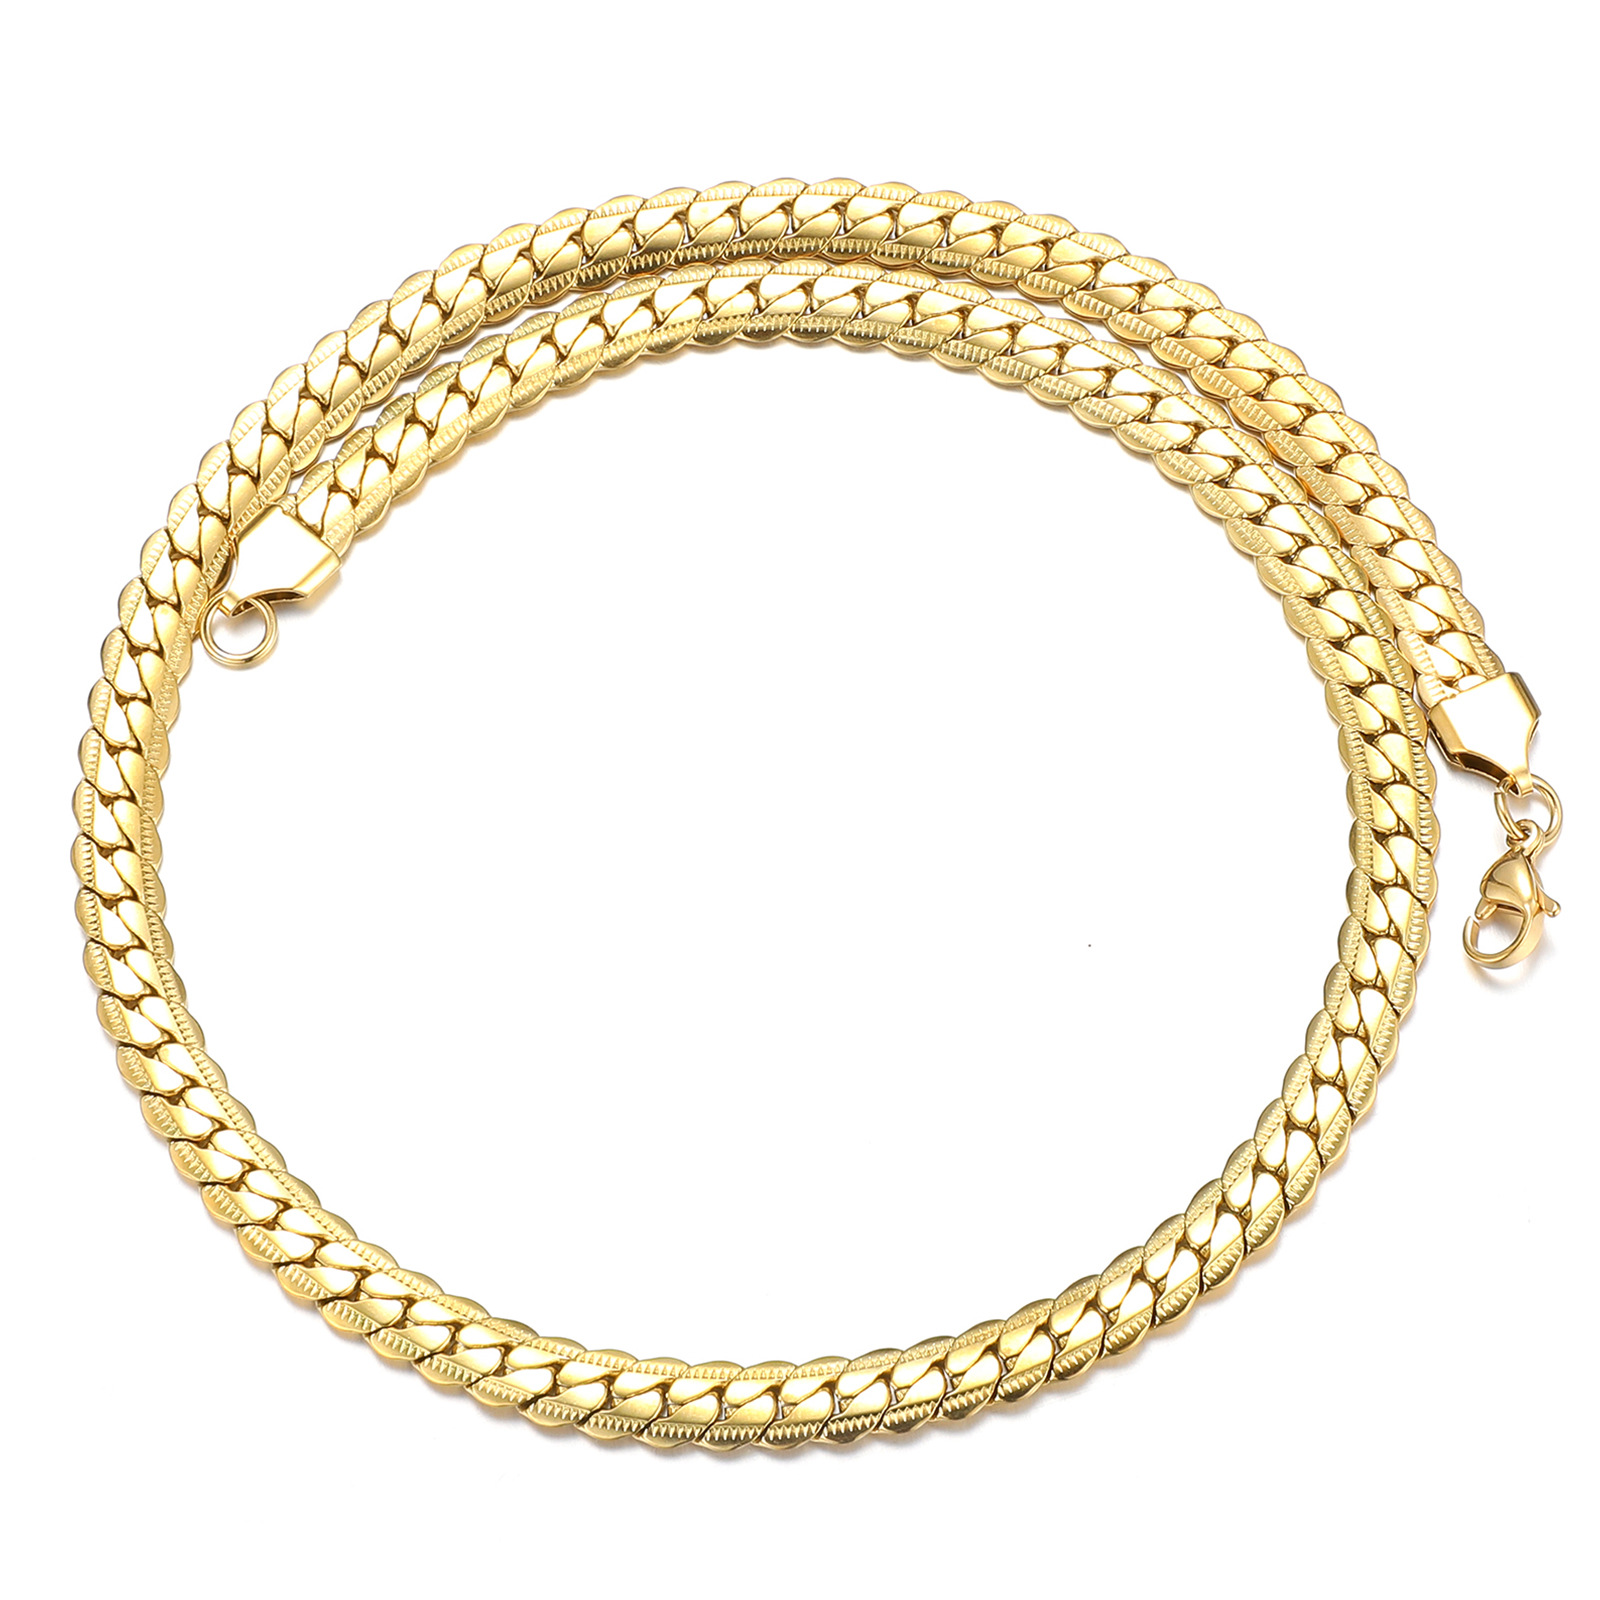 3:Gold necklace (45cm long)